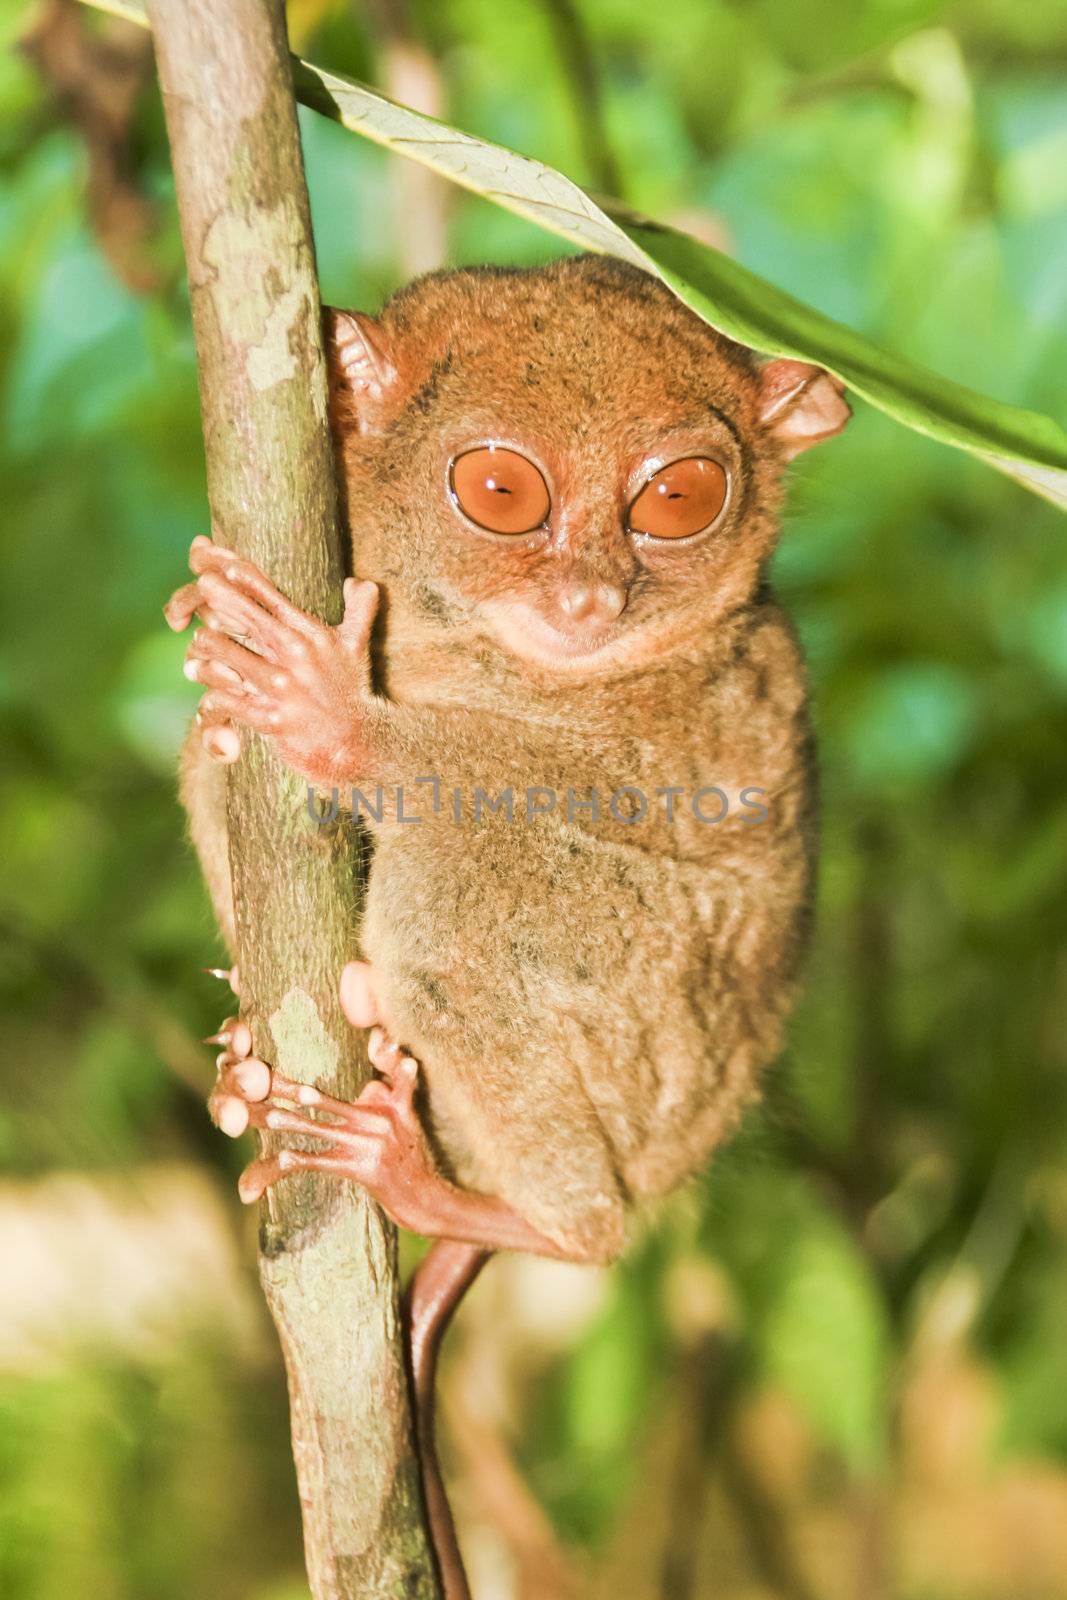 Tarsier monkey by kasto